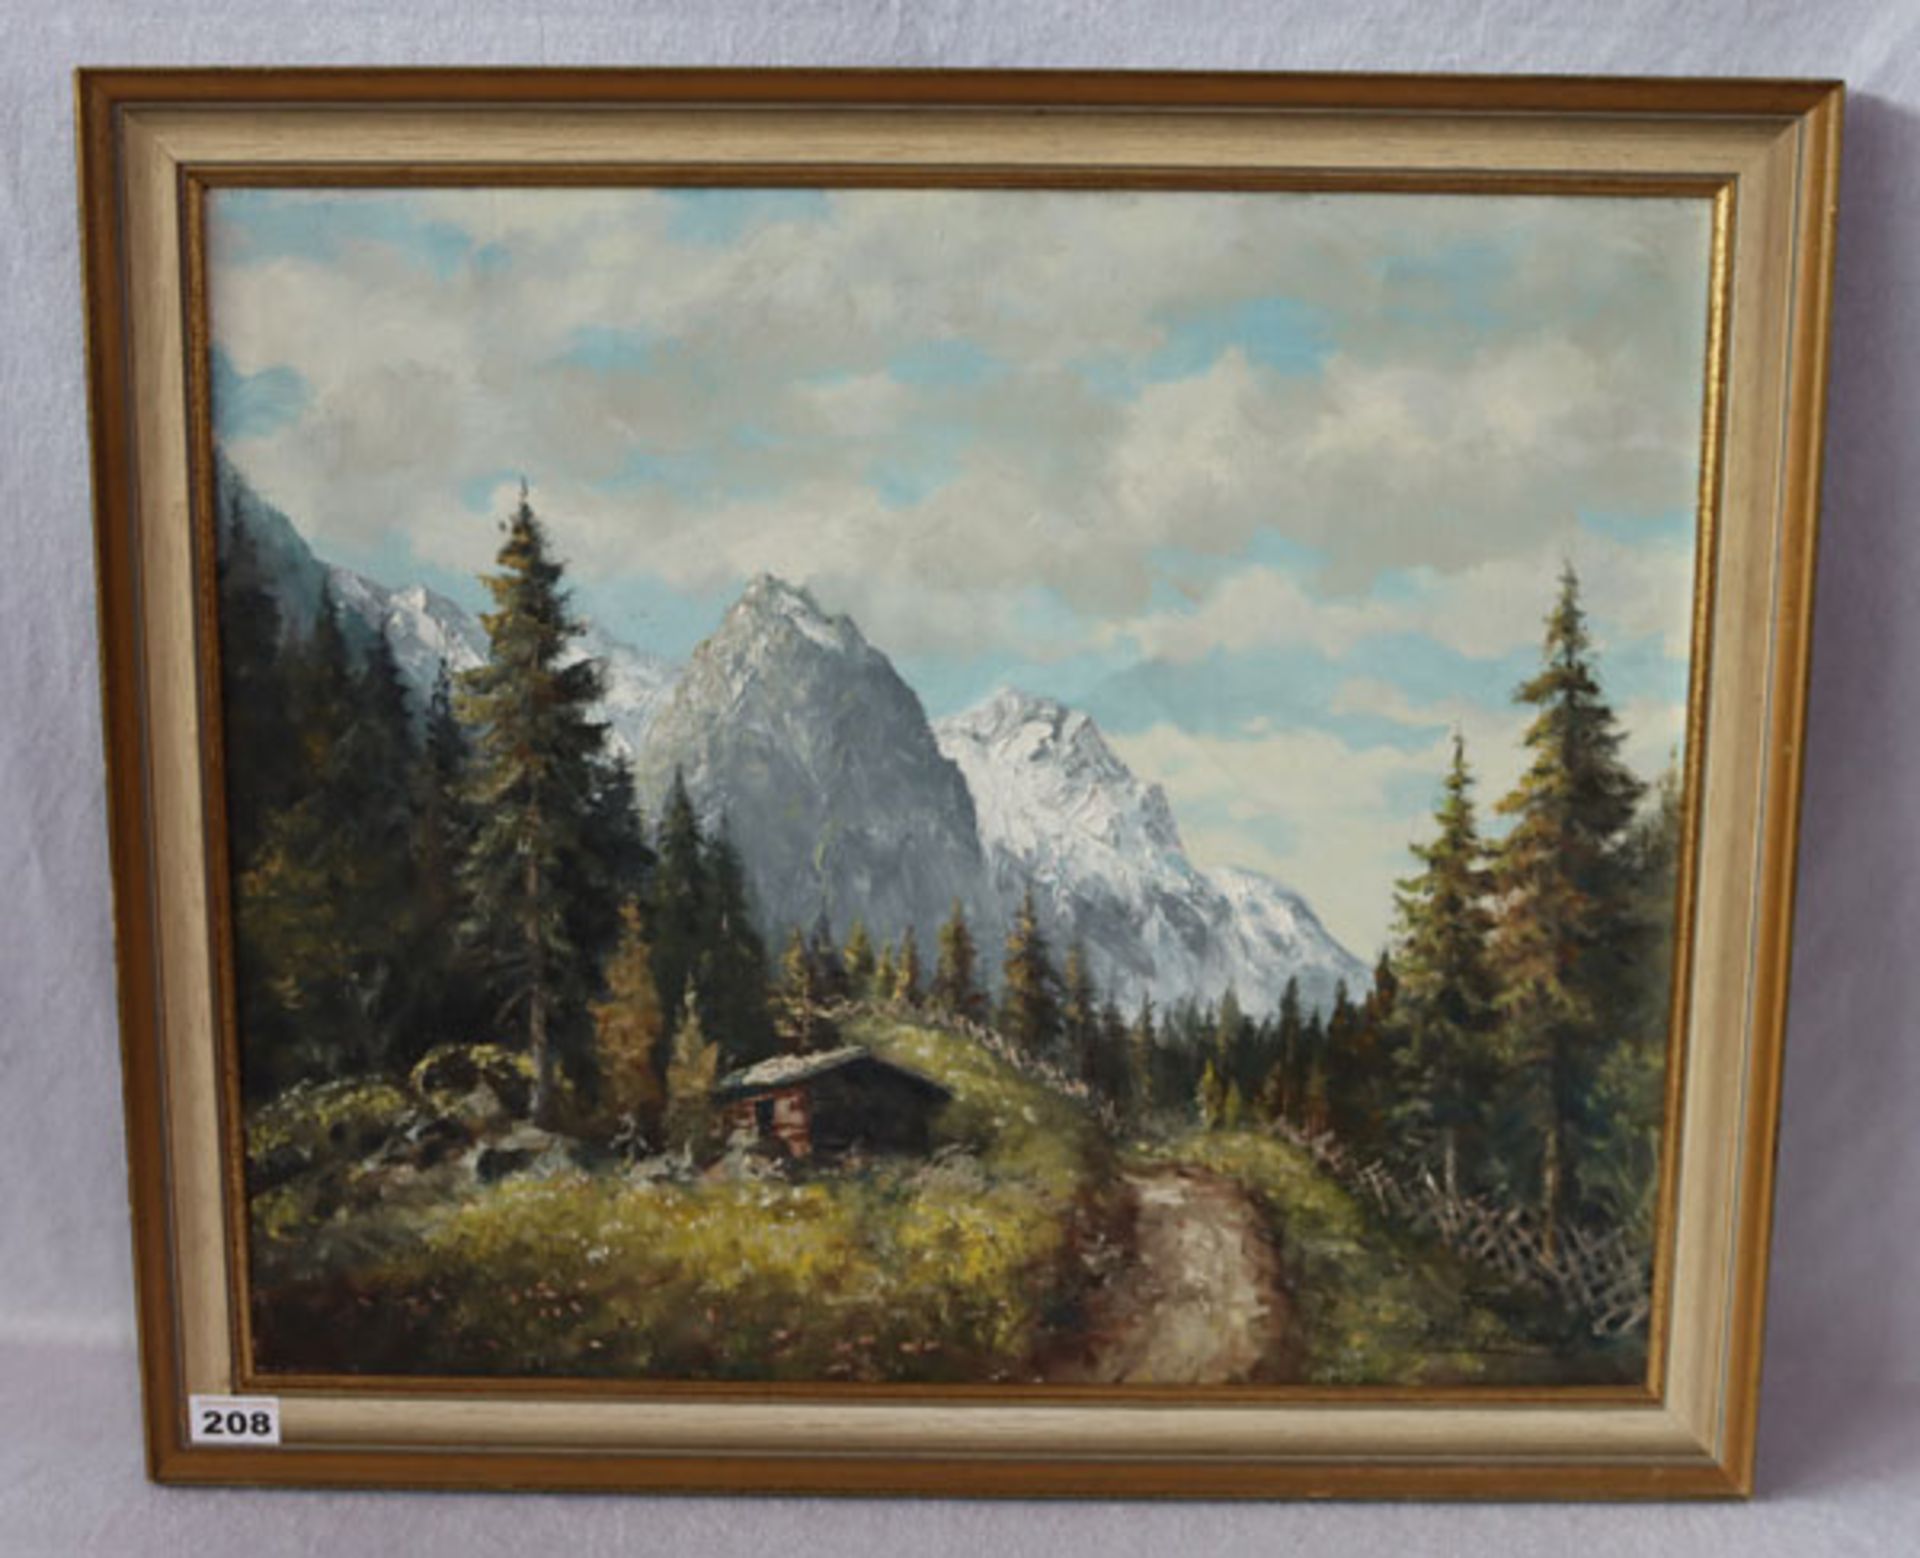 Gemälde ÖL/LW 'Hochgebirgs-Szenerie', signiert Franz Krippendorf, * 1907 Innsbruck + 1982 München,